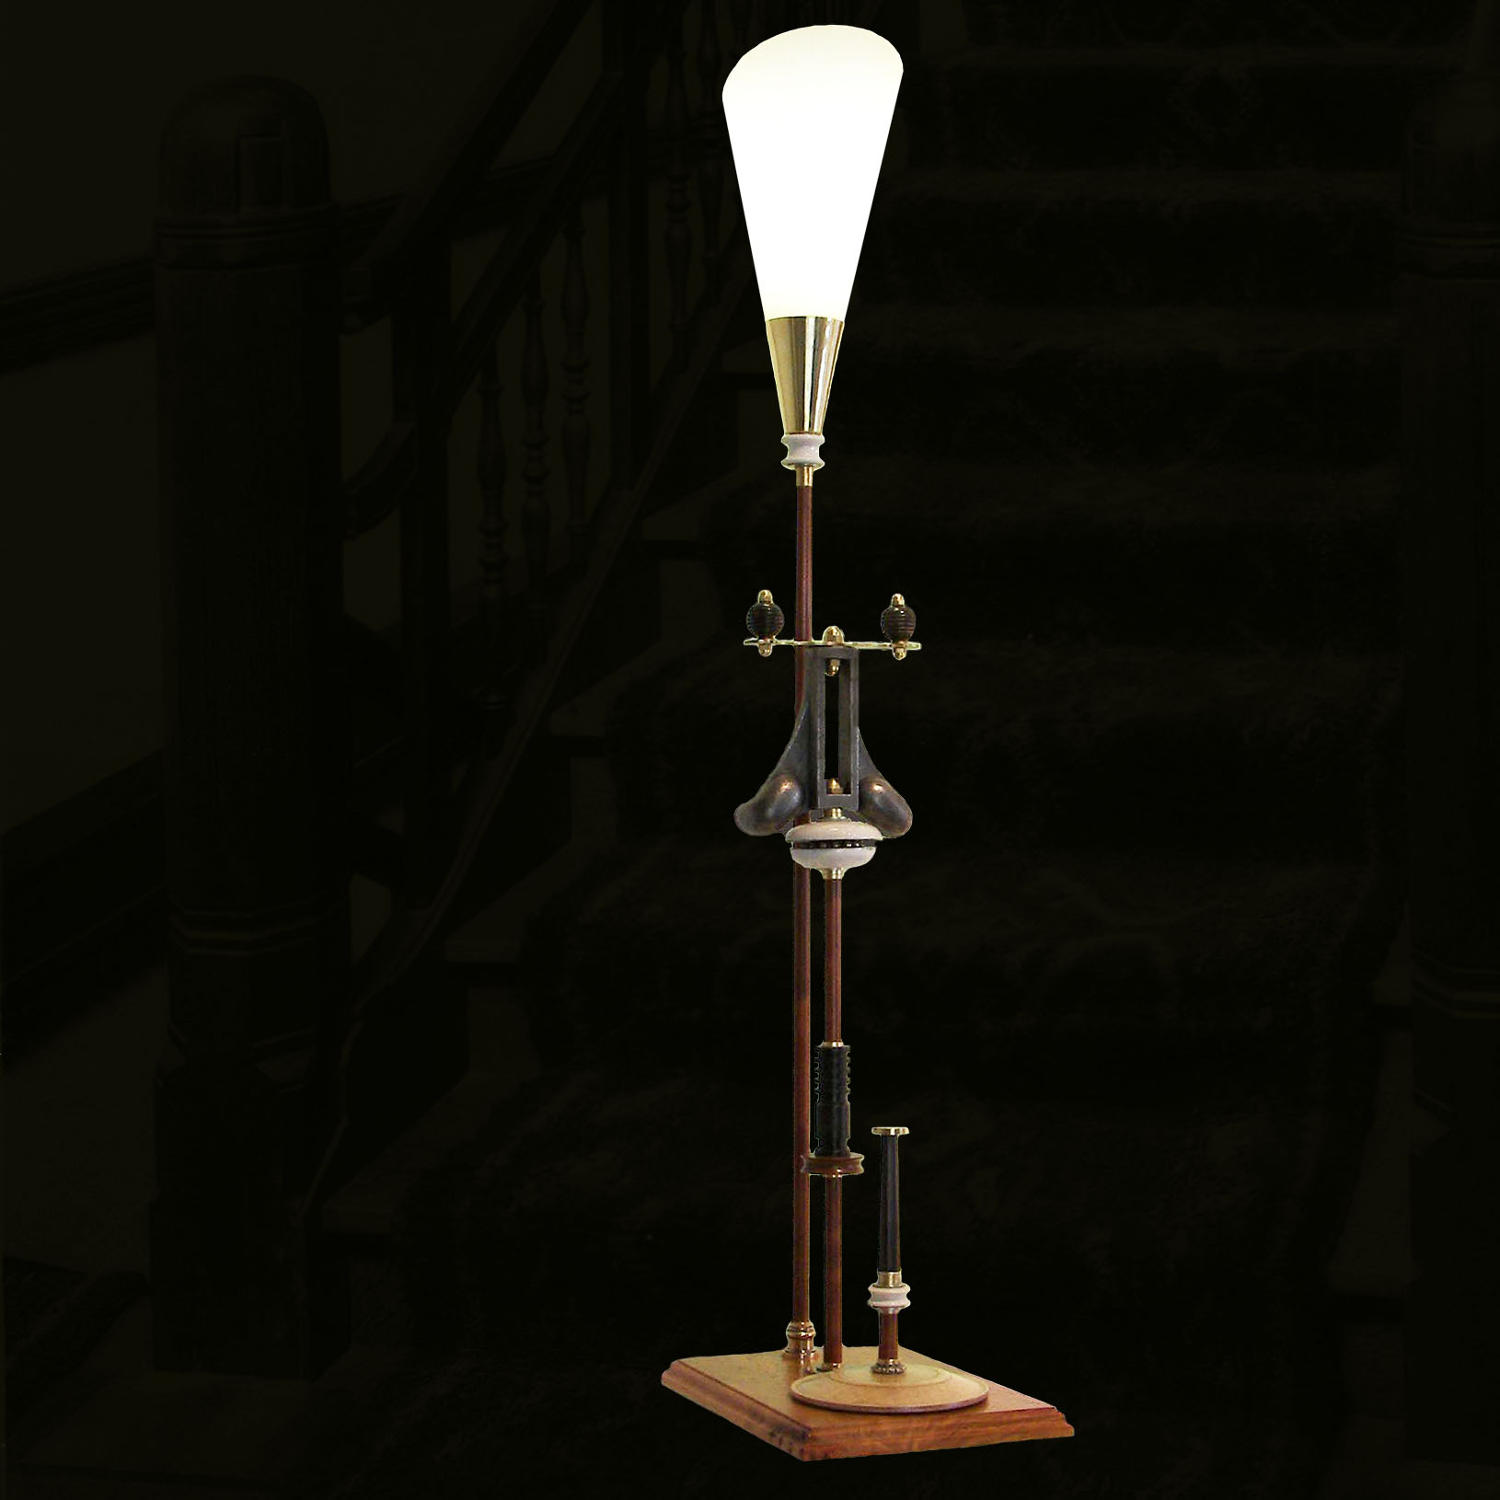 Unique artist-designed lamp - Sine Qua Non - by Gilles Bourlet